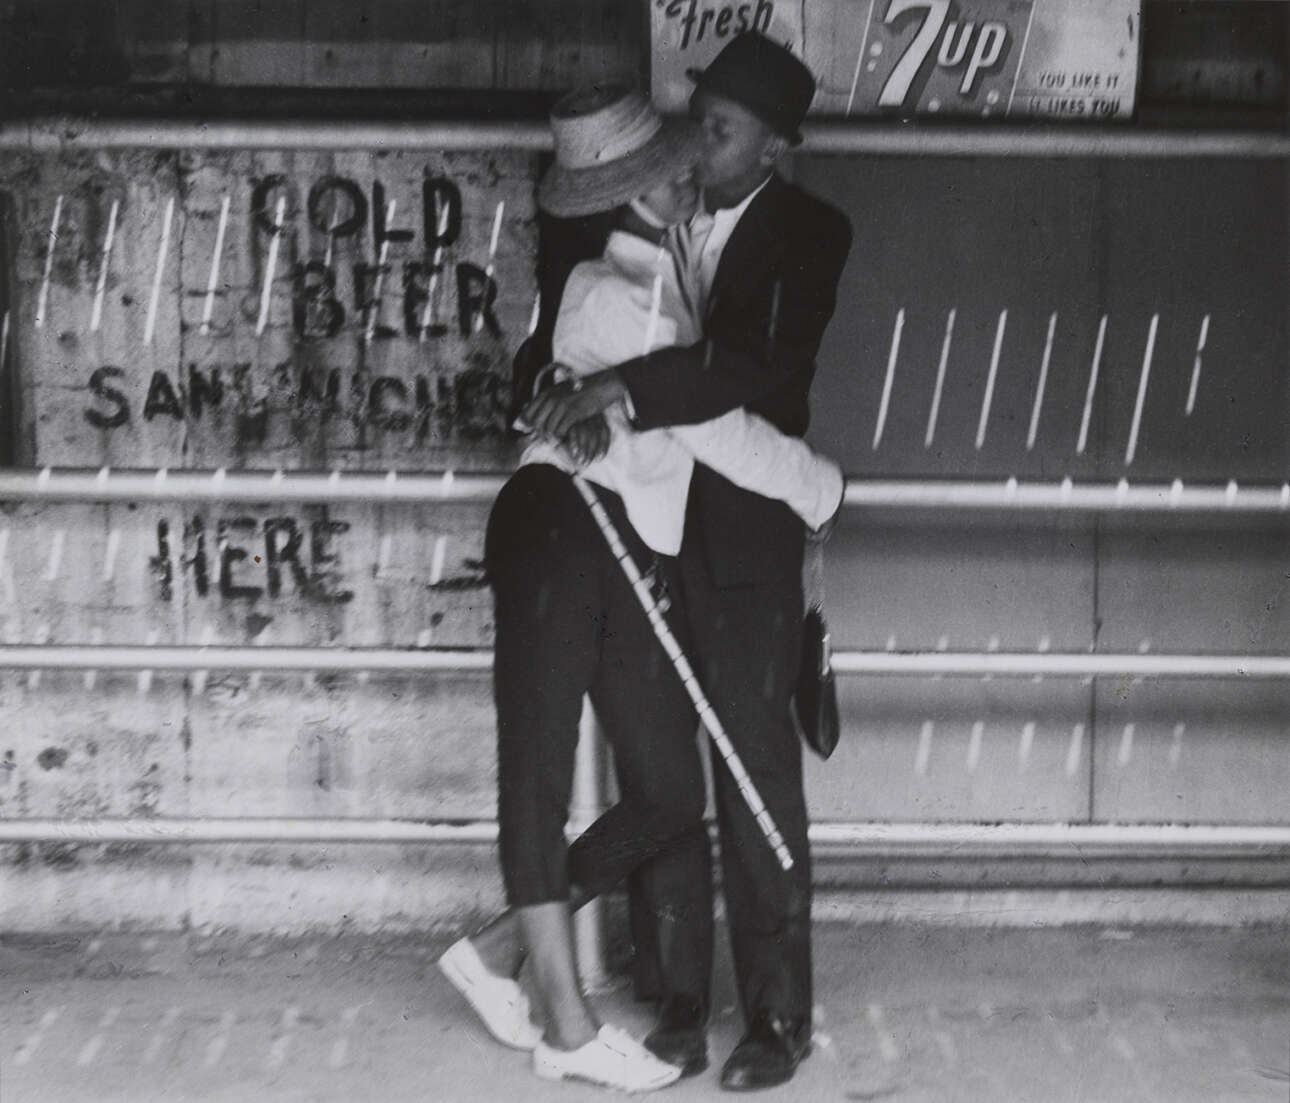 Ενα ερωτευμένο ζευγάρι στο Κόνι Αιλαντ της Νέας Υόρκης, το 1966. Σύμφωνα με την Τζούντι Γκλίκμαν Λόντερ, «η φωτογραφία φέρνει το αόρατο στο φως και μας προτρέπει να αναλογιστούμε τη ζωή σε όλη της την πολυπλοκότητα, πέρα από το κάδρο»